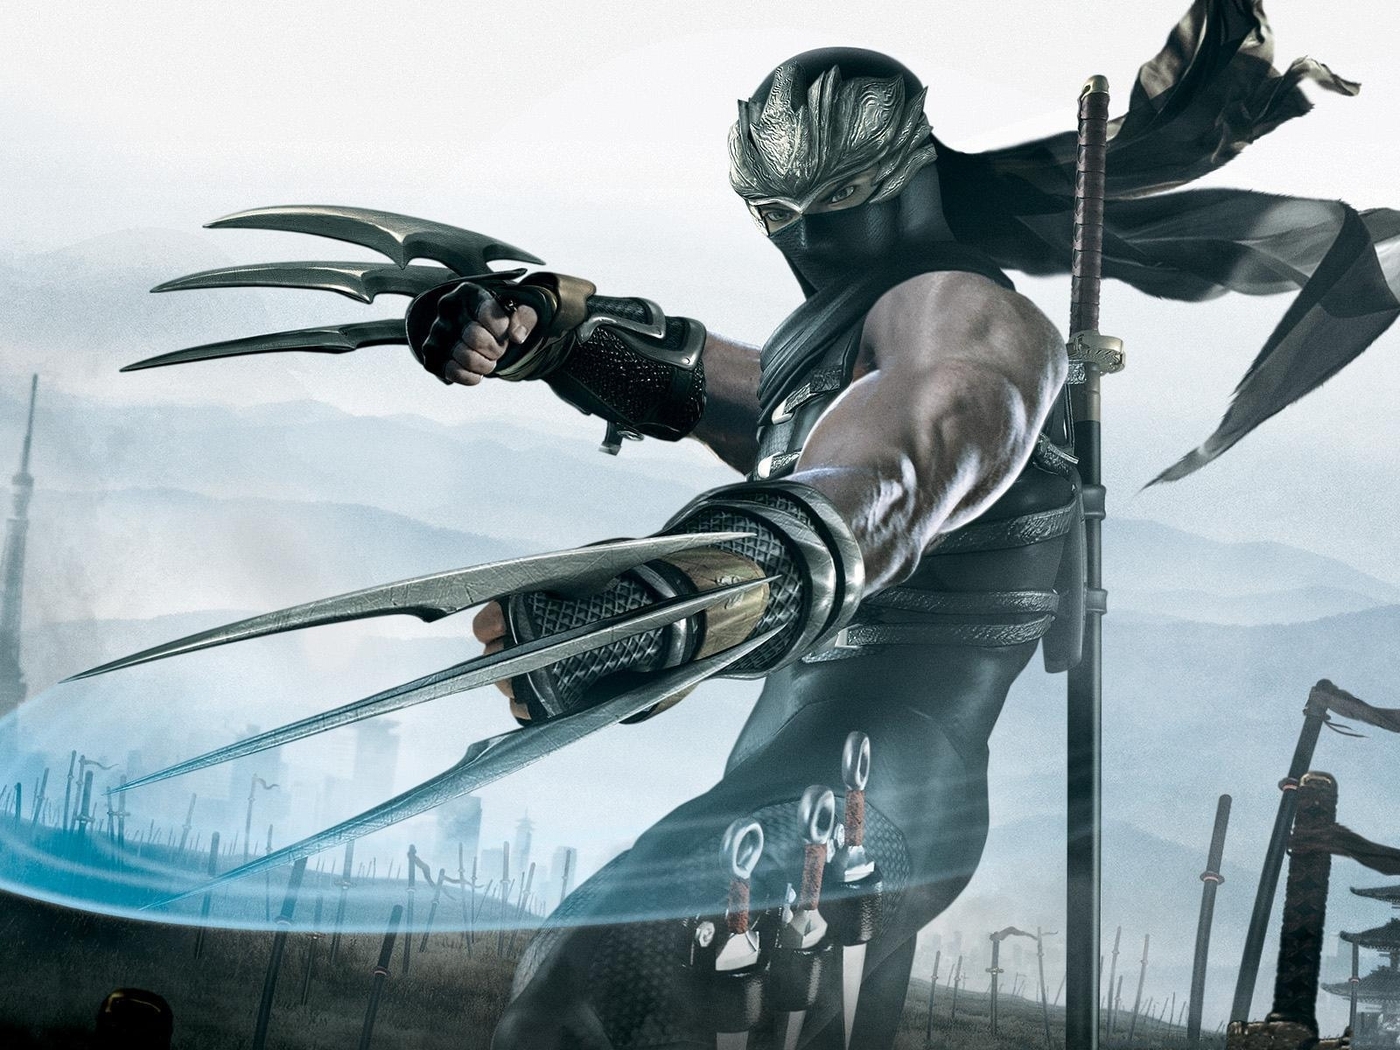 Image: Ninja Gaiden 2, ninja, swing, weapons, battlefield, swords, blades, mask